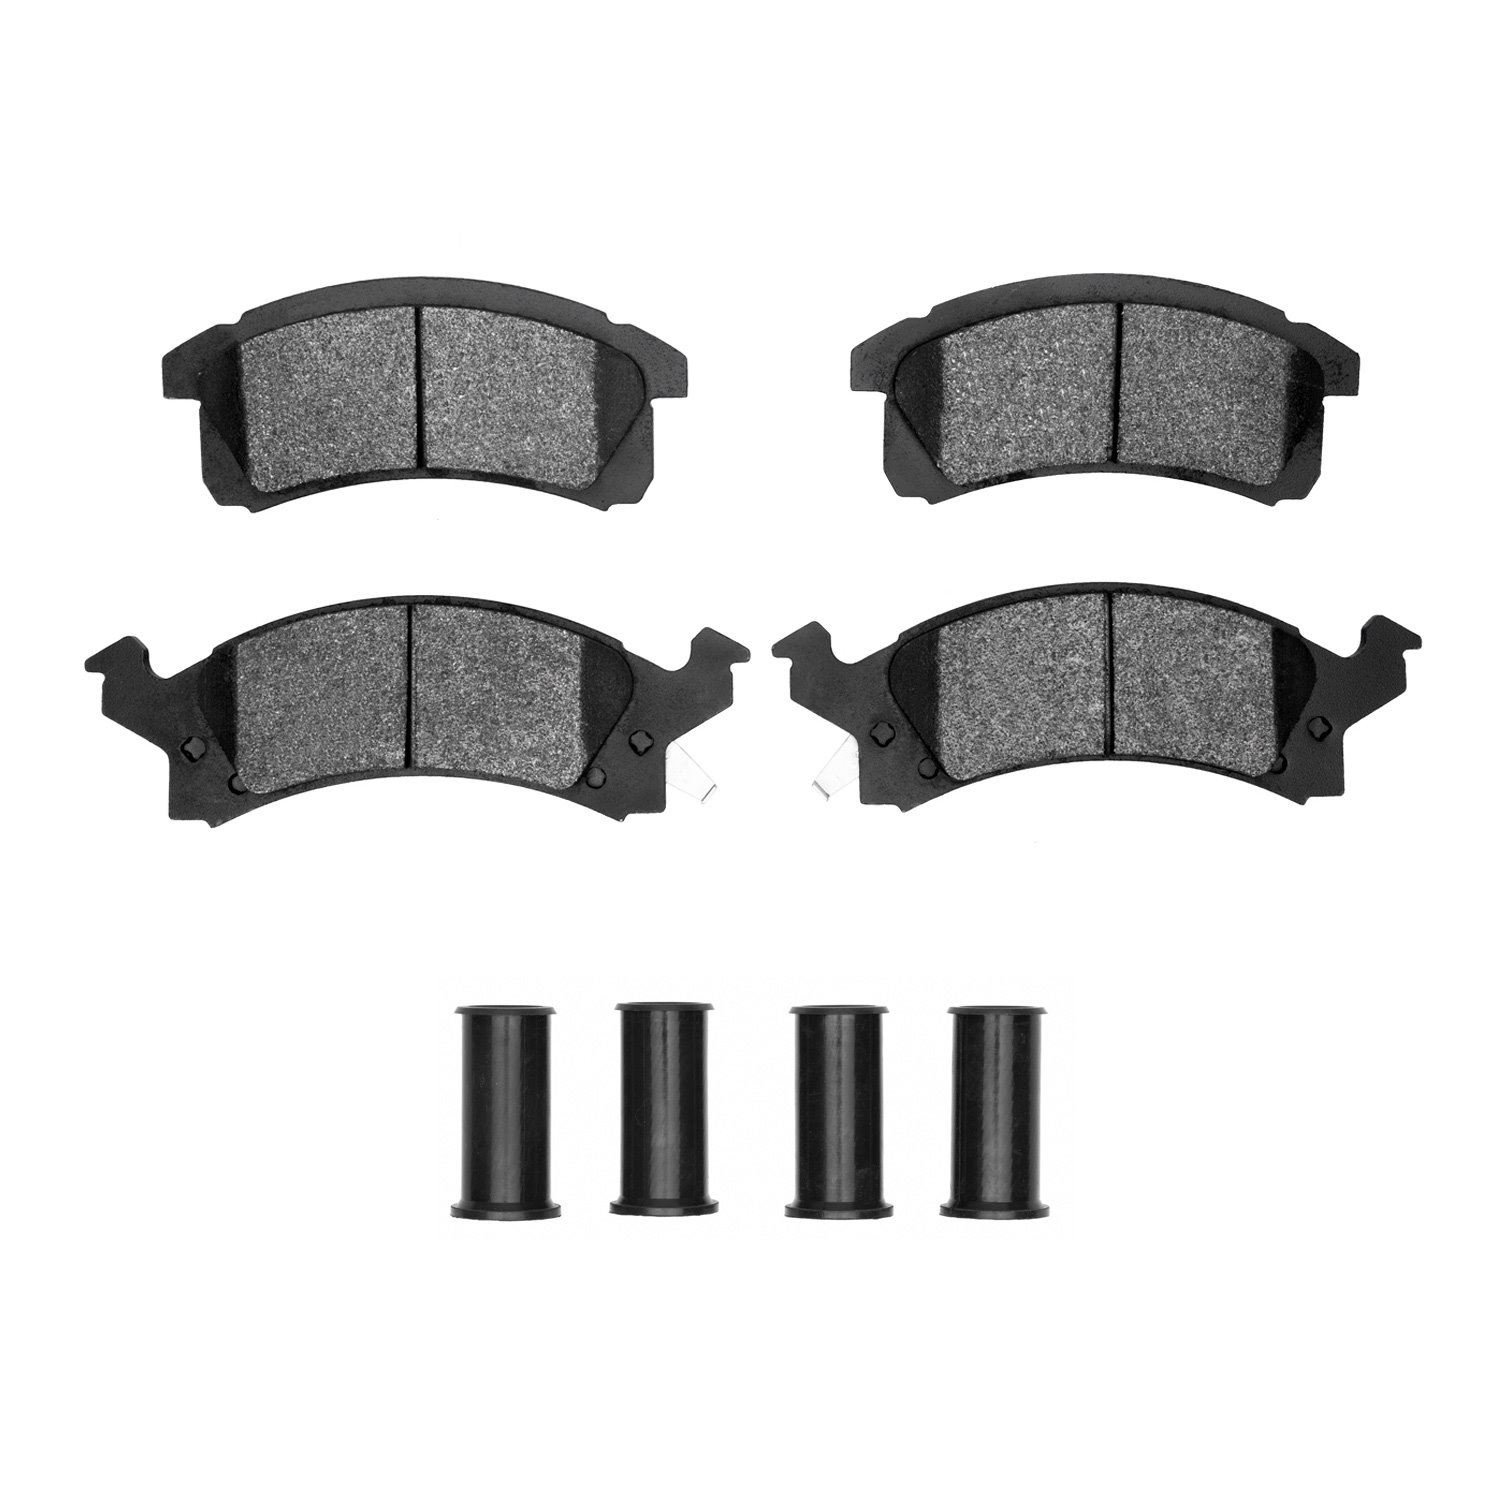 Semi-Metallic Brake Pads & Hardware Kit, 1990-2005 GM, Position: Front